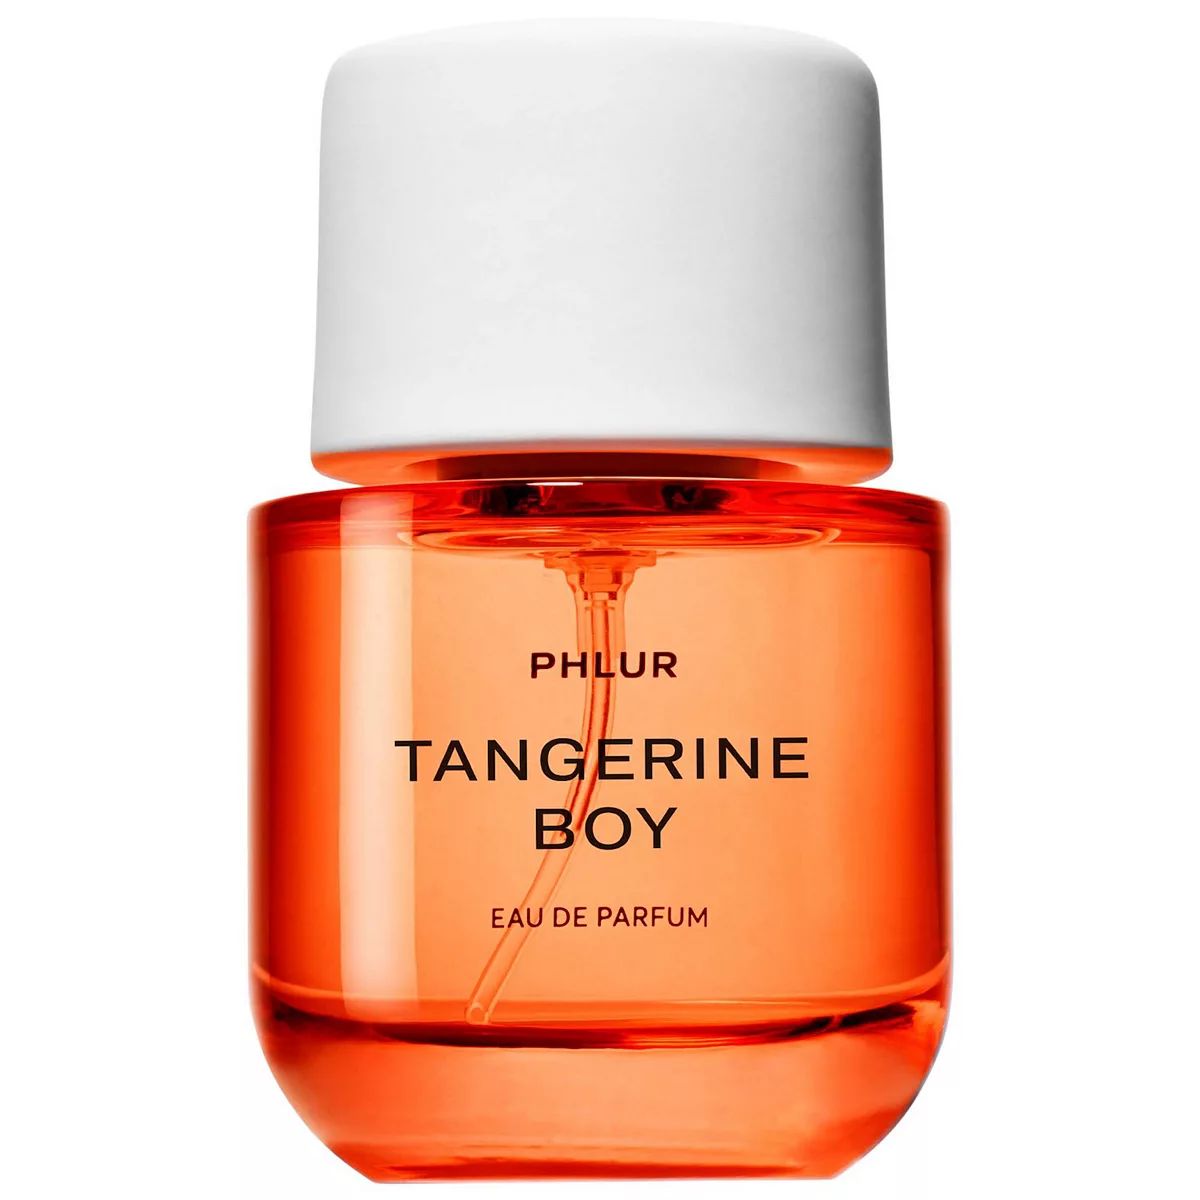 PHLUR Tangerine Boy Eau de Parfum | Kohl's